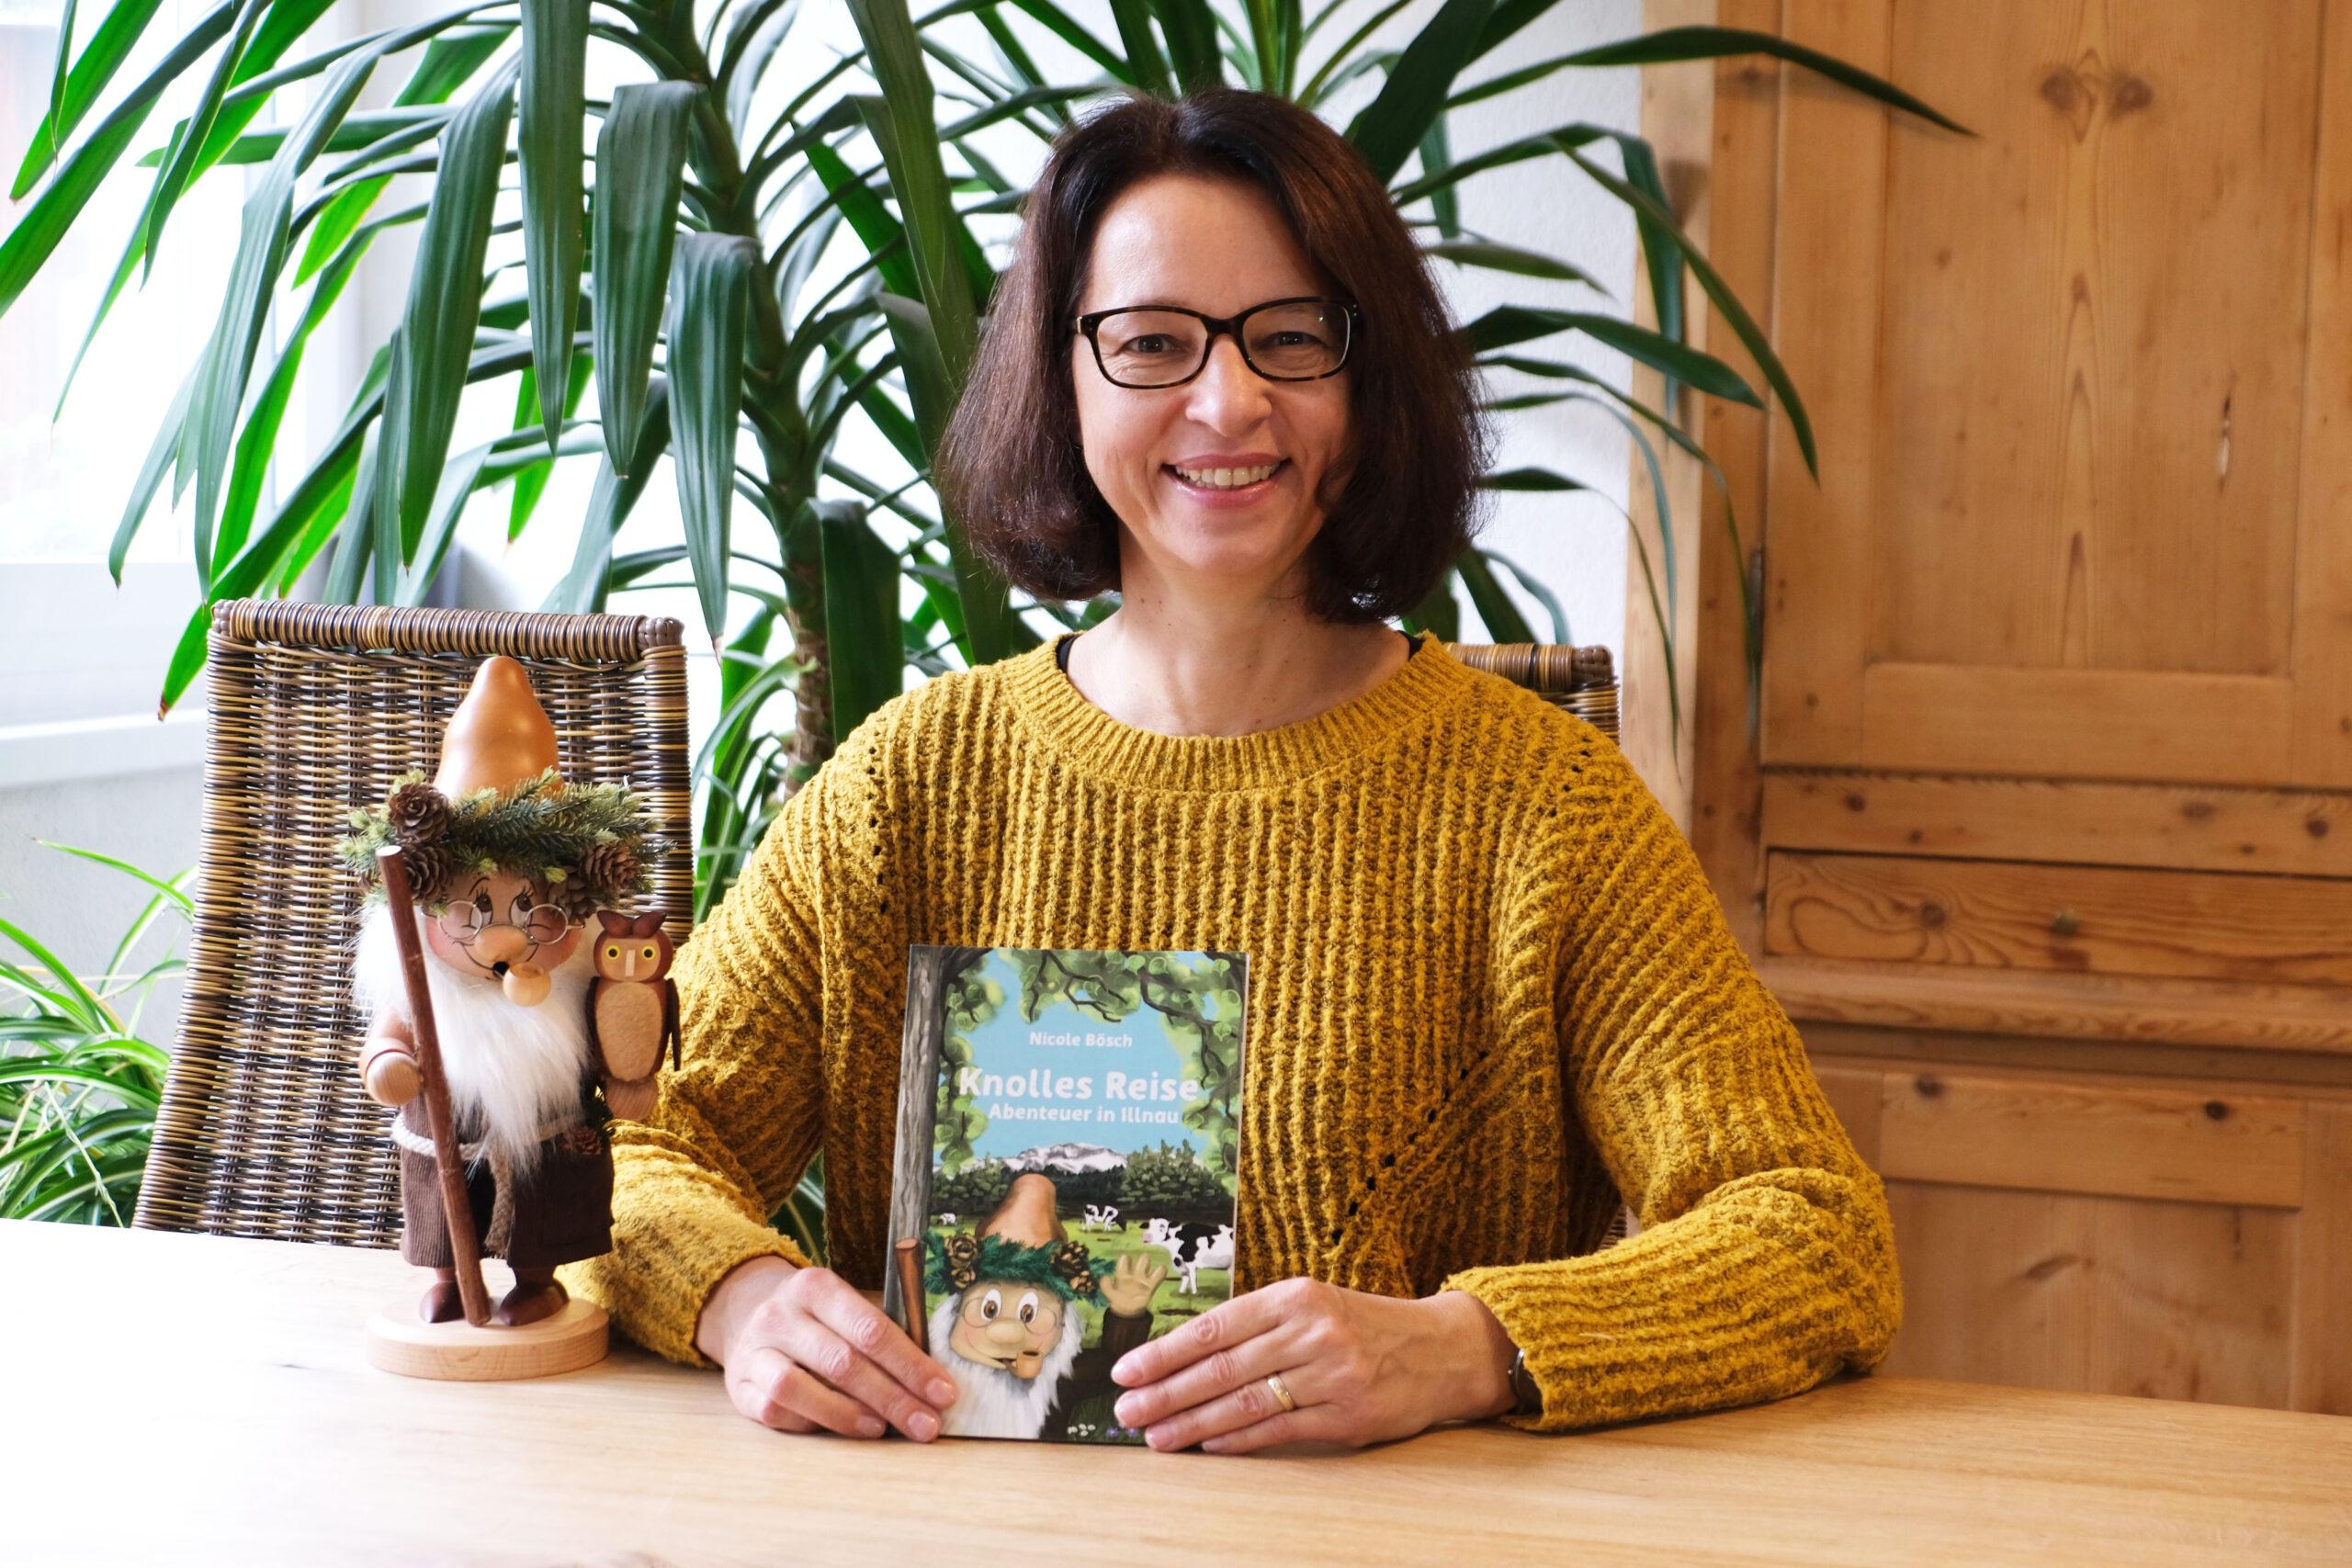 Die Autorin Nicole Bösch zeigt ihr Buch für ein Interview